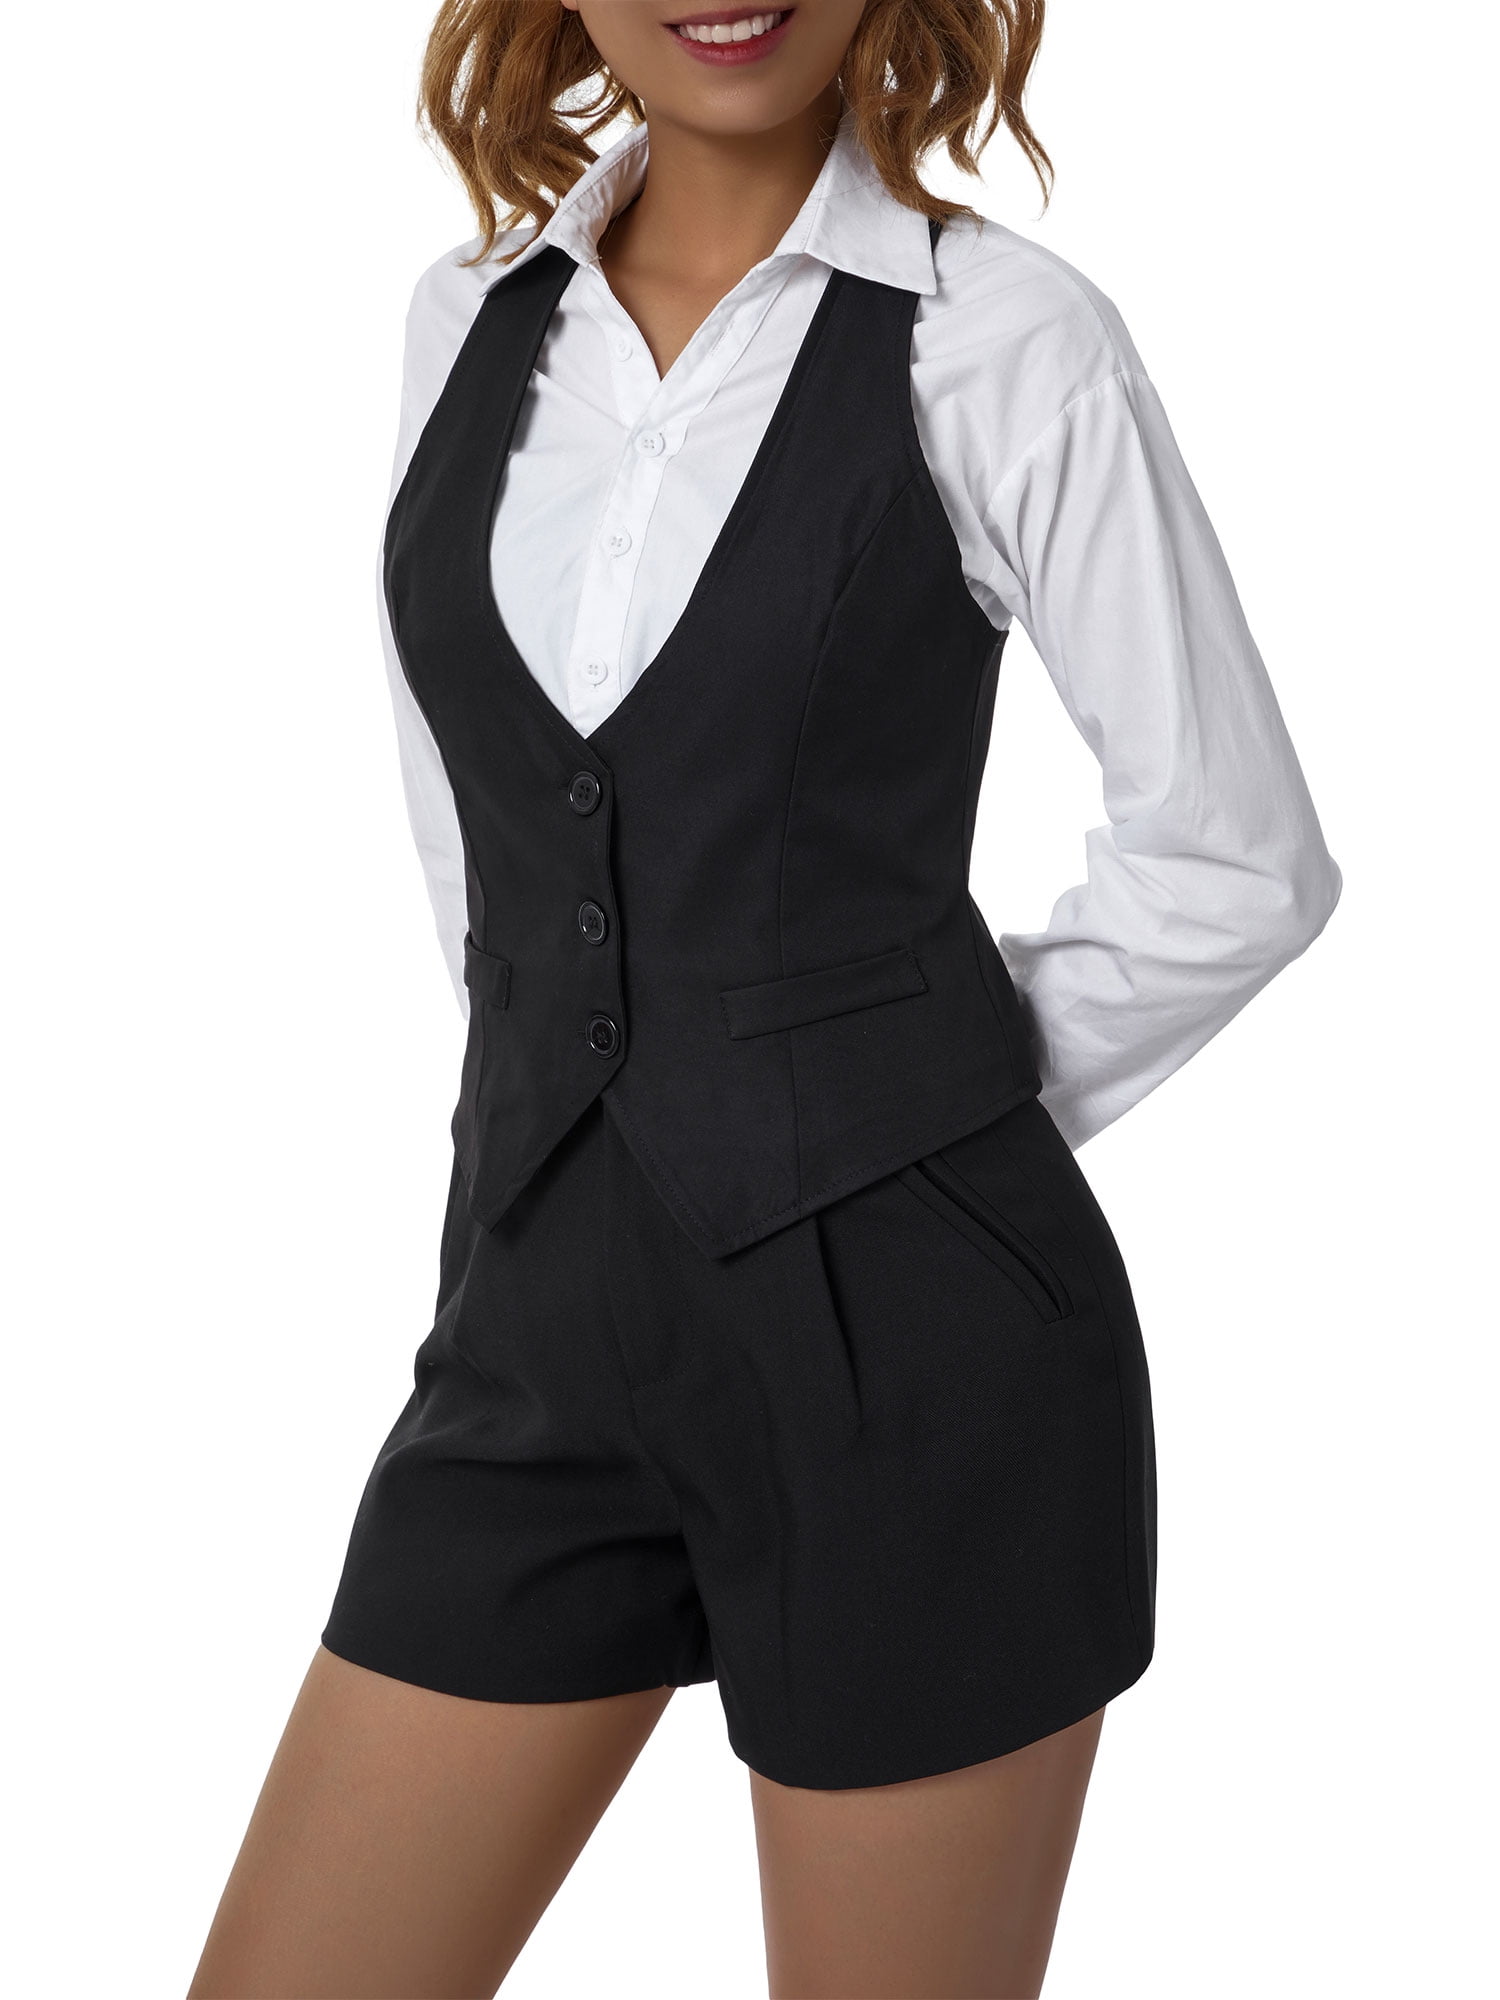 Women Steampunk Dressy Formal Tuxedo Retro Jacquard Vest Suit Waistcoat Jacket 